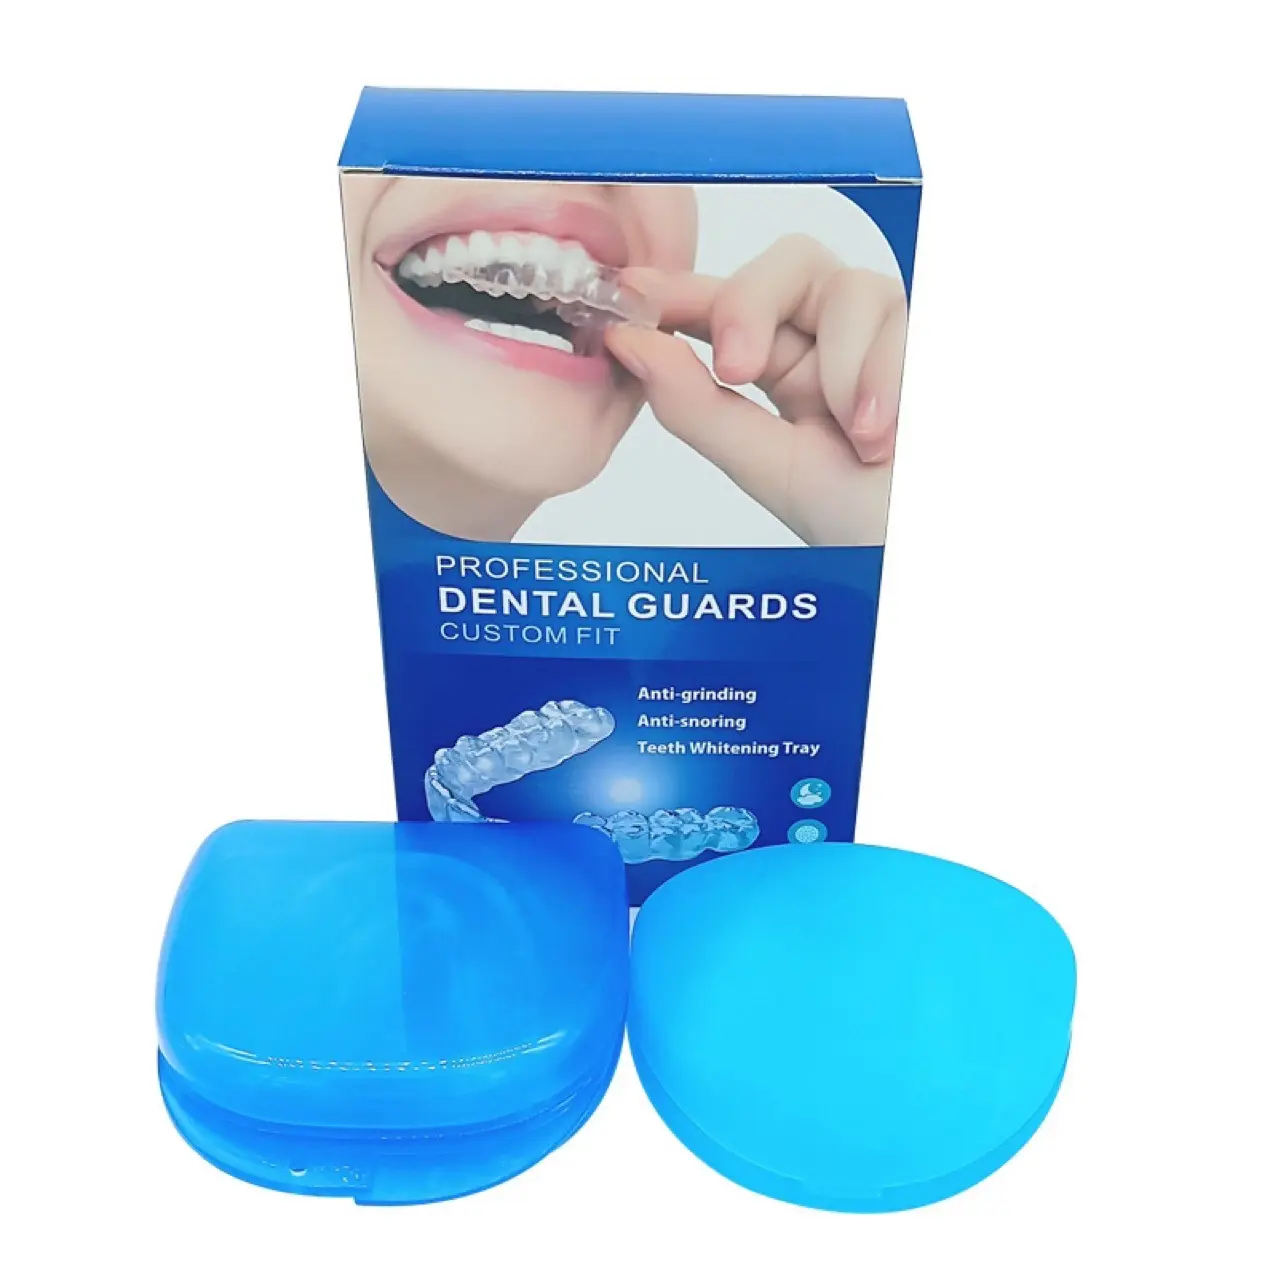 Protège-bouche anti-ronflement de qualité supérieure, soin des dents, blanchiment de l'embout buccal, protection pour un bon sommeil nocturne